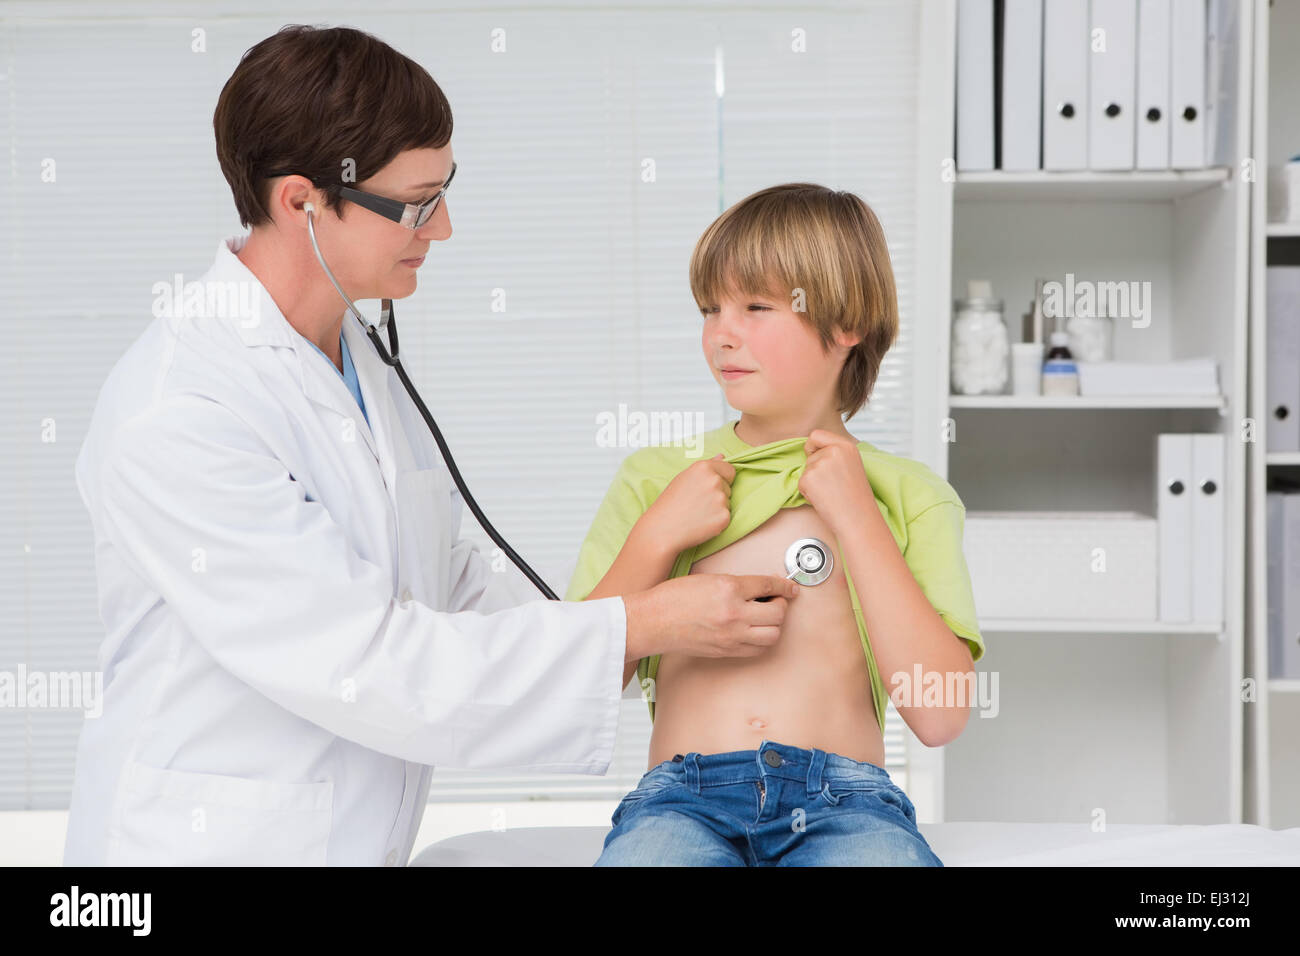 Гол осматривает врач. Врач осматривает мальчика. Мальчик у врача. Врач осматривает ребенка. Медосмотр стетоскопом.